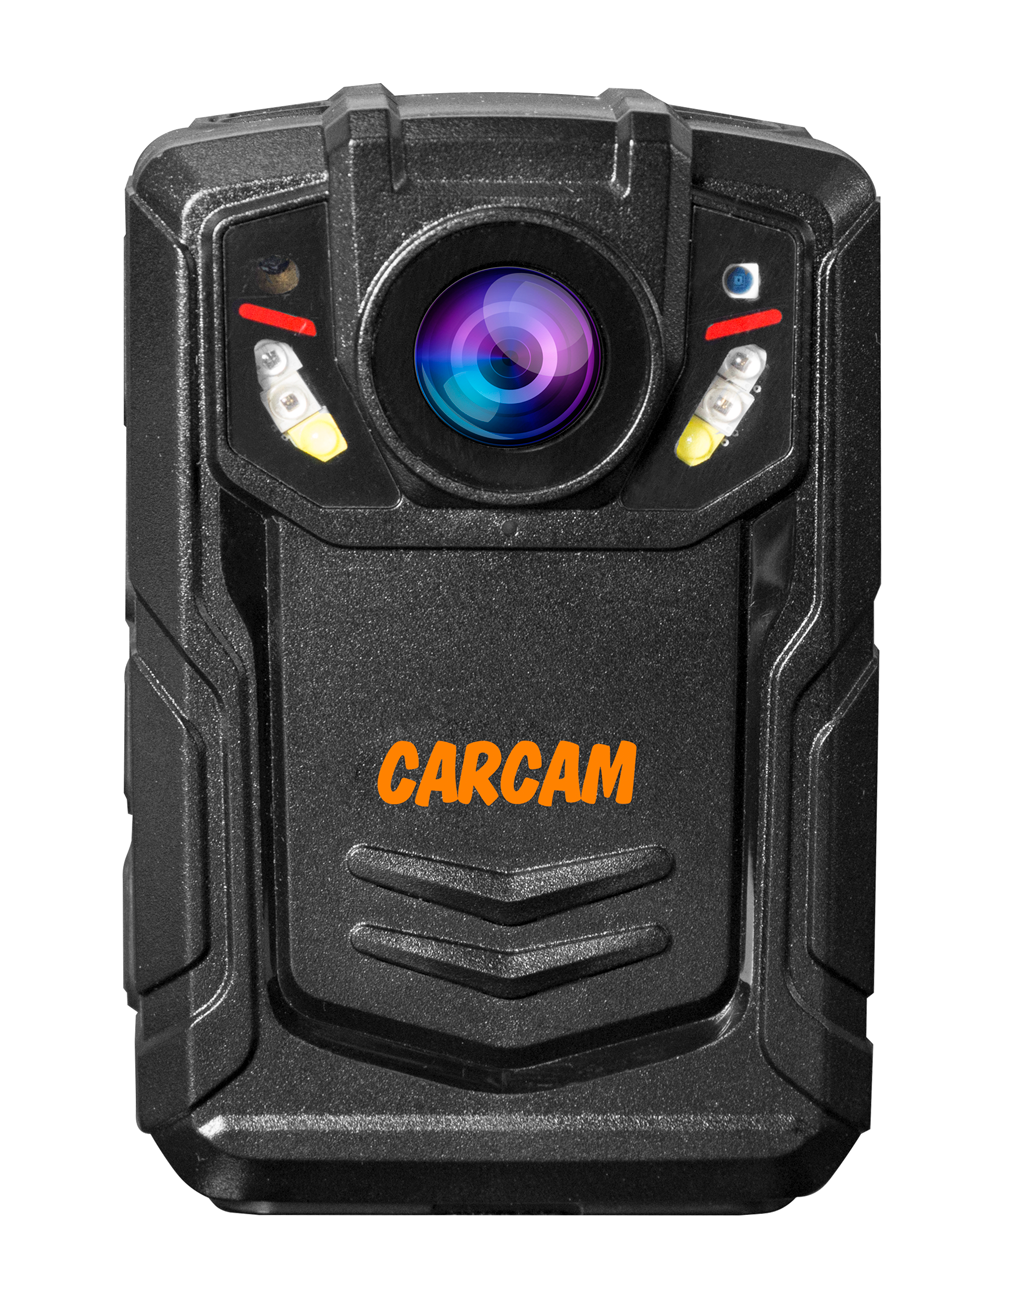 Персональный Quad HD видеорегистратор  CARCAM COMBAT 2S/4G 128GB персональный quad hd видеорегистратор для работников технических объектов carcam combat 2s prof 64gb